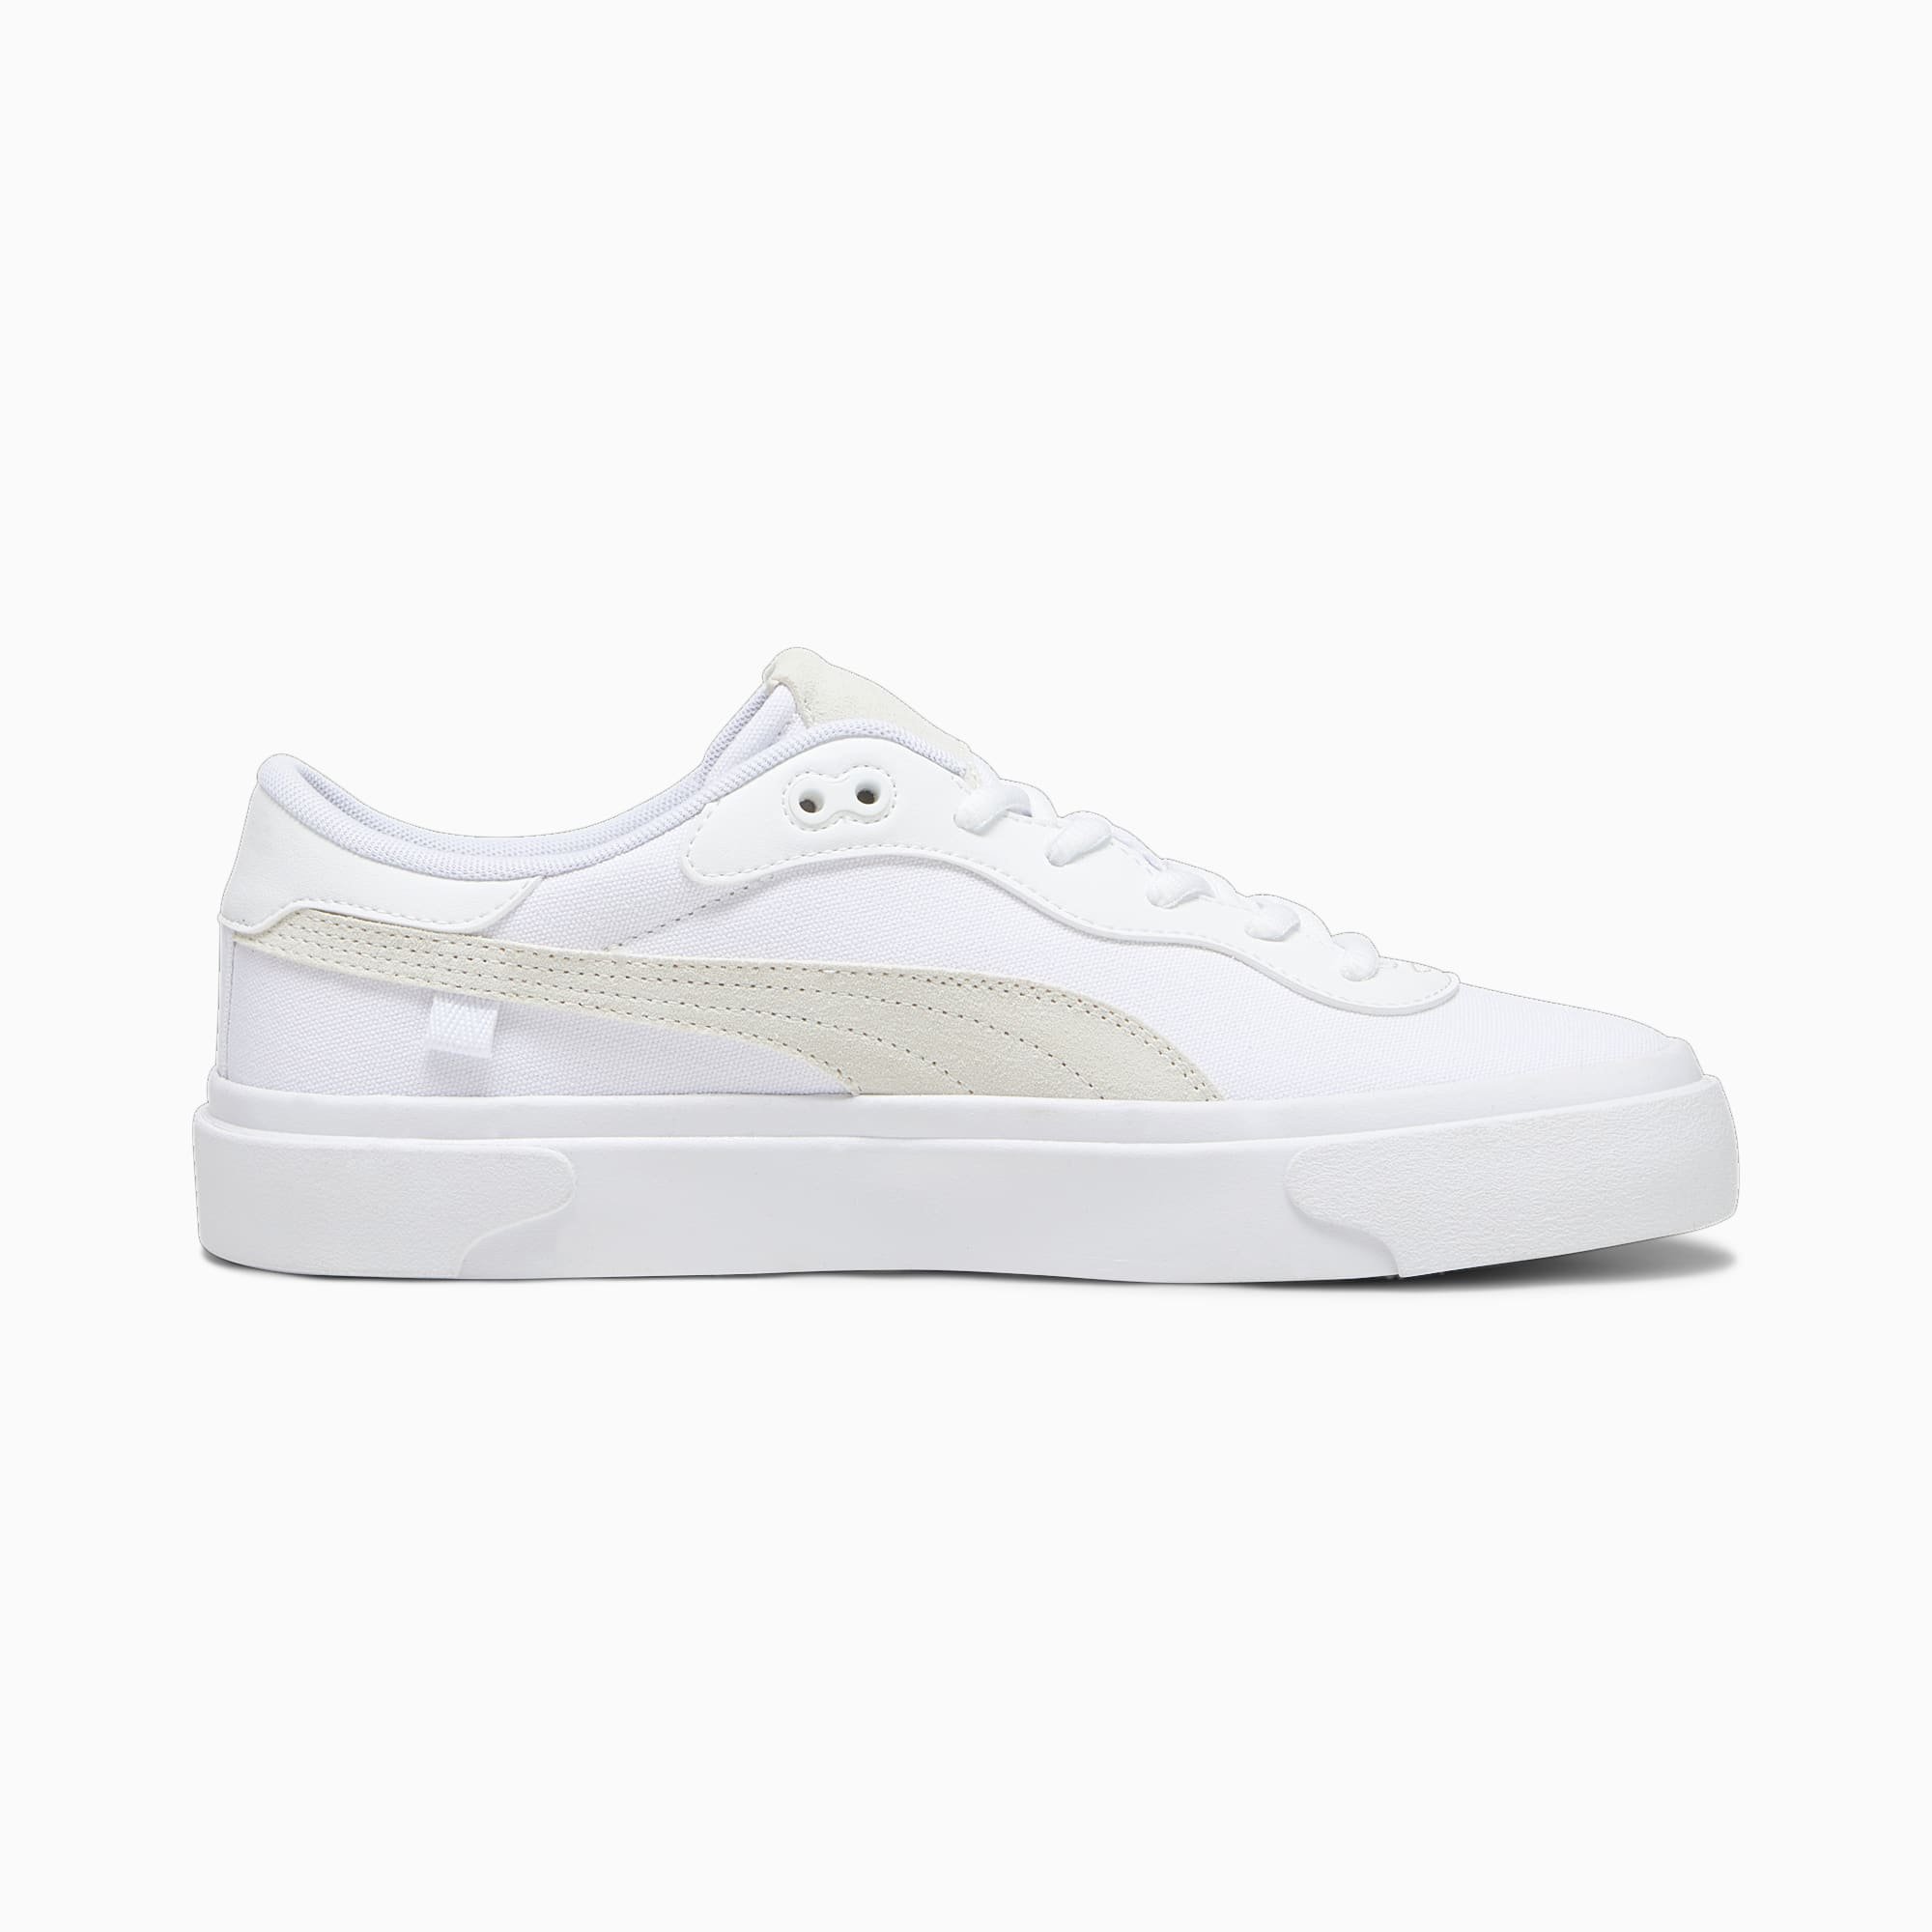 Women's PUMA Capri Royale Sneakers, White/Warm White, Size 35,5, Accessories